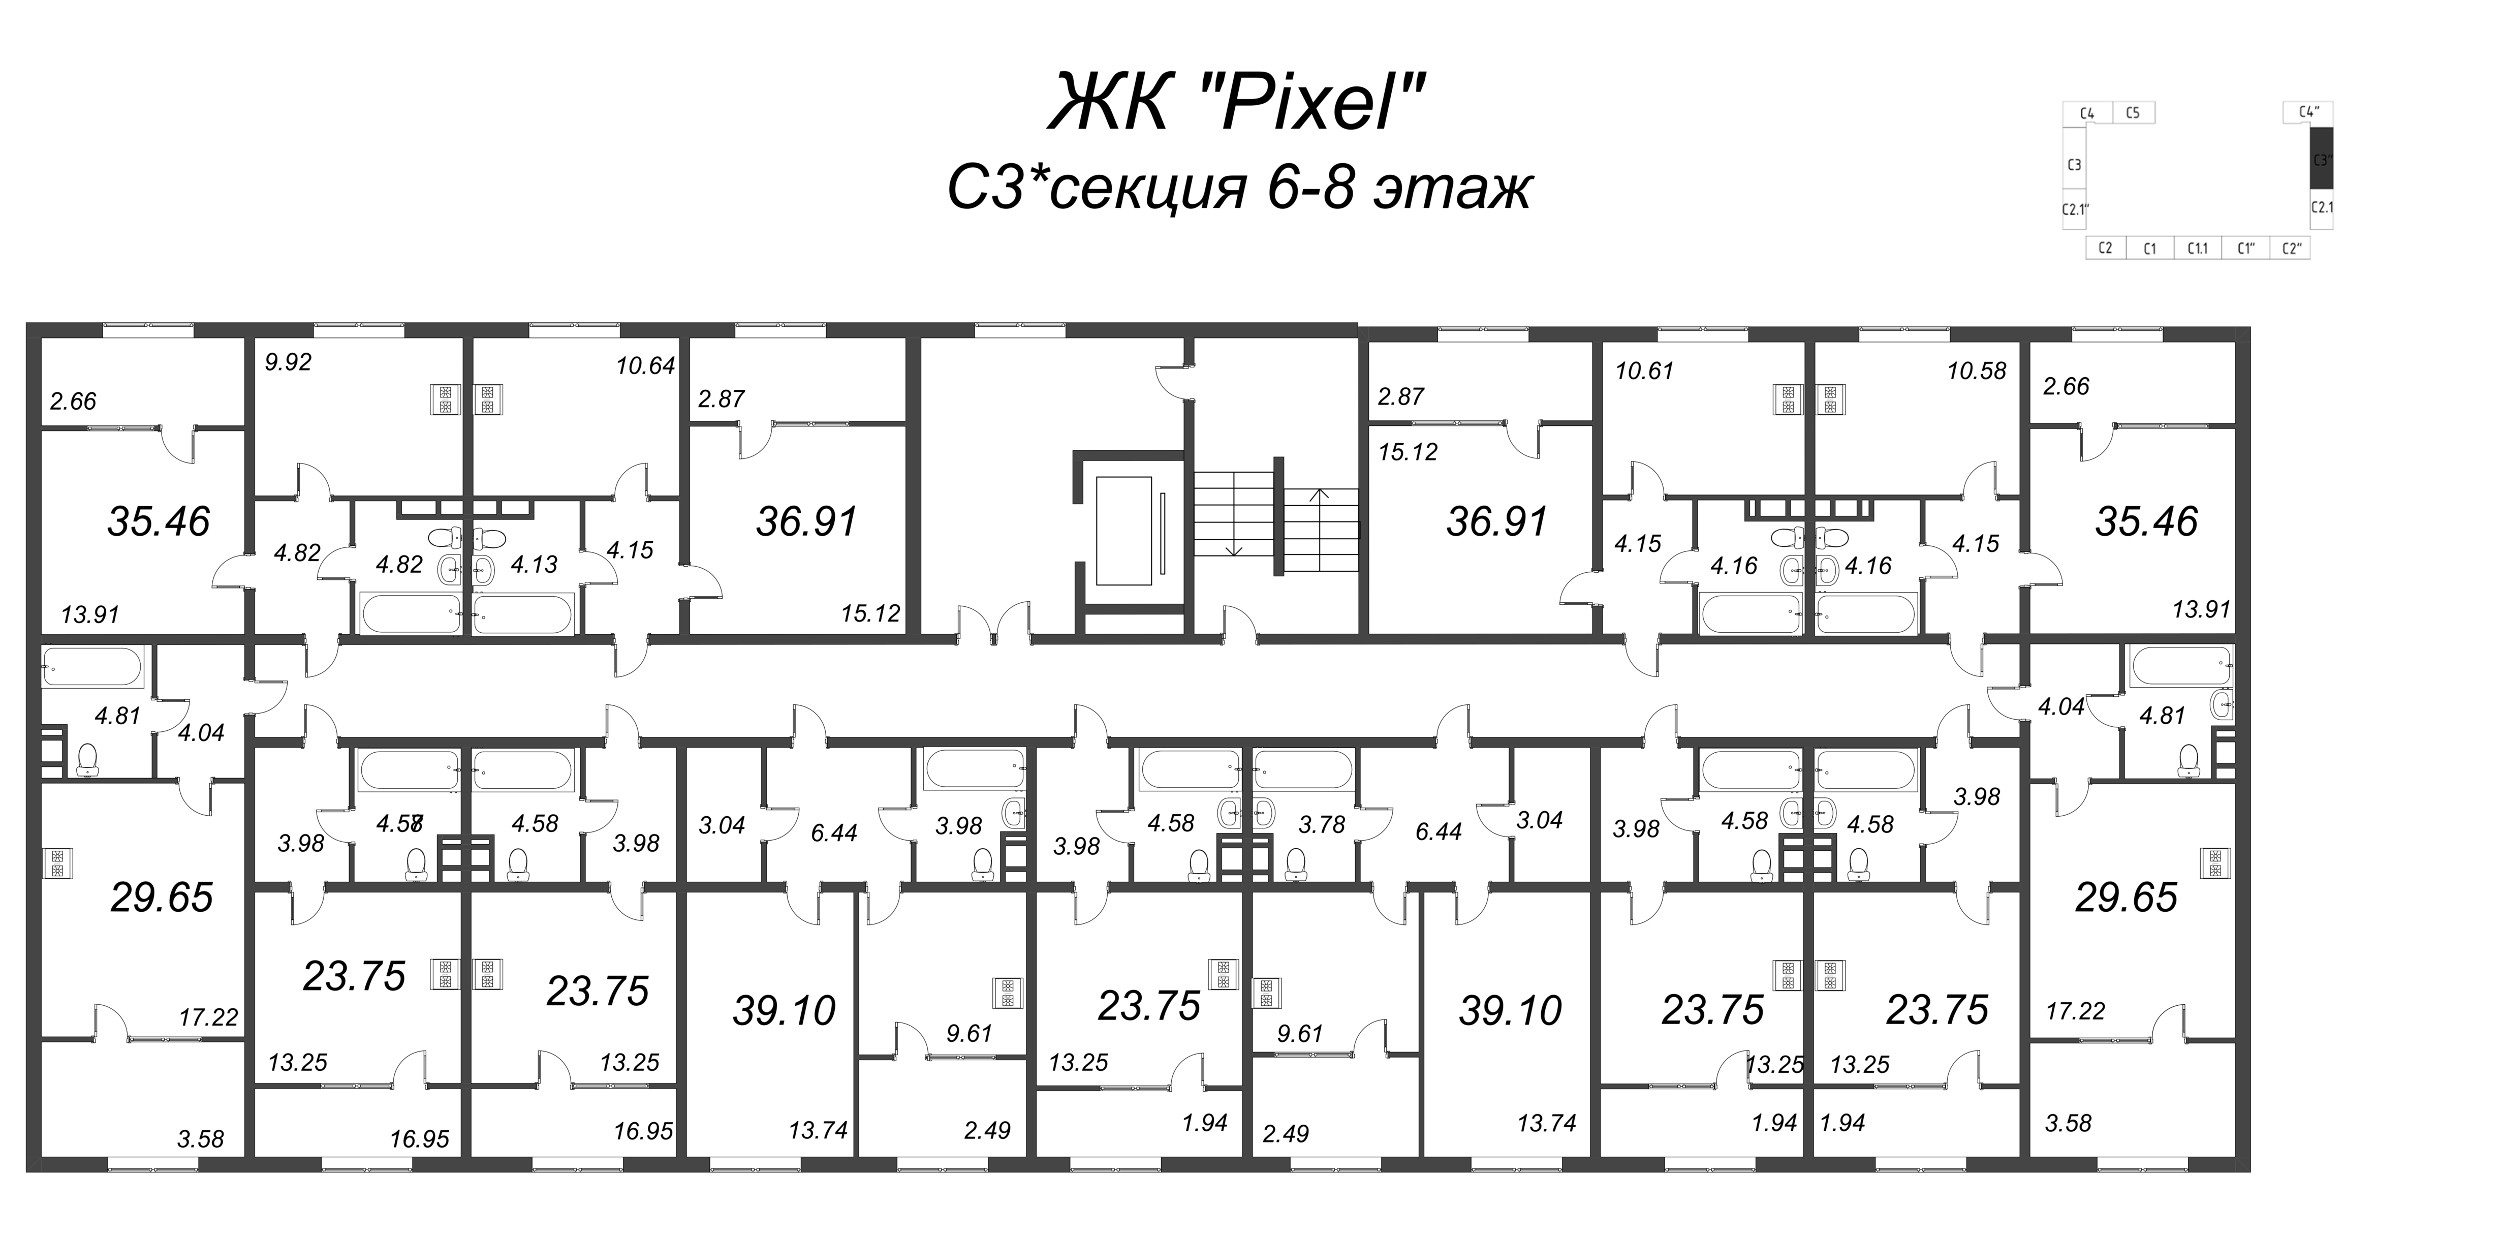 1-комнатная квартира, 38.09 м² в ЖК "Pixel" - планировка этажа